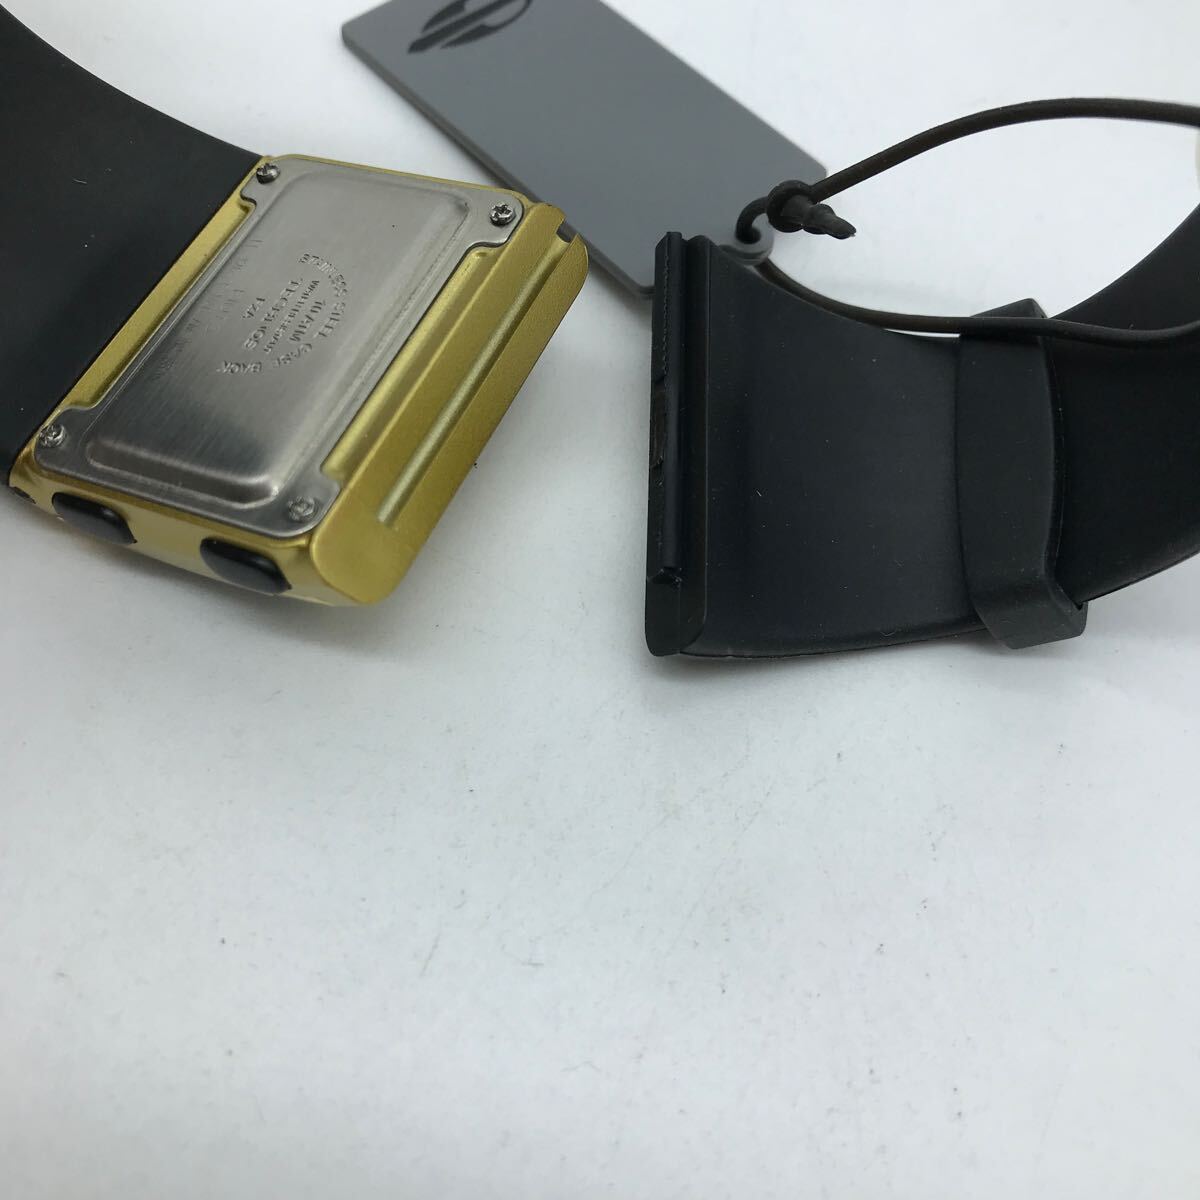 TECHNOS Tecnos Mormaii наручные часы резиновая лента надеты . изменение с коробкой рабочий товар Z-2